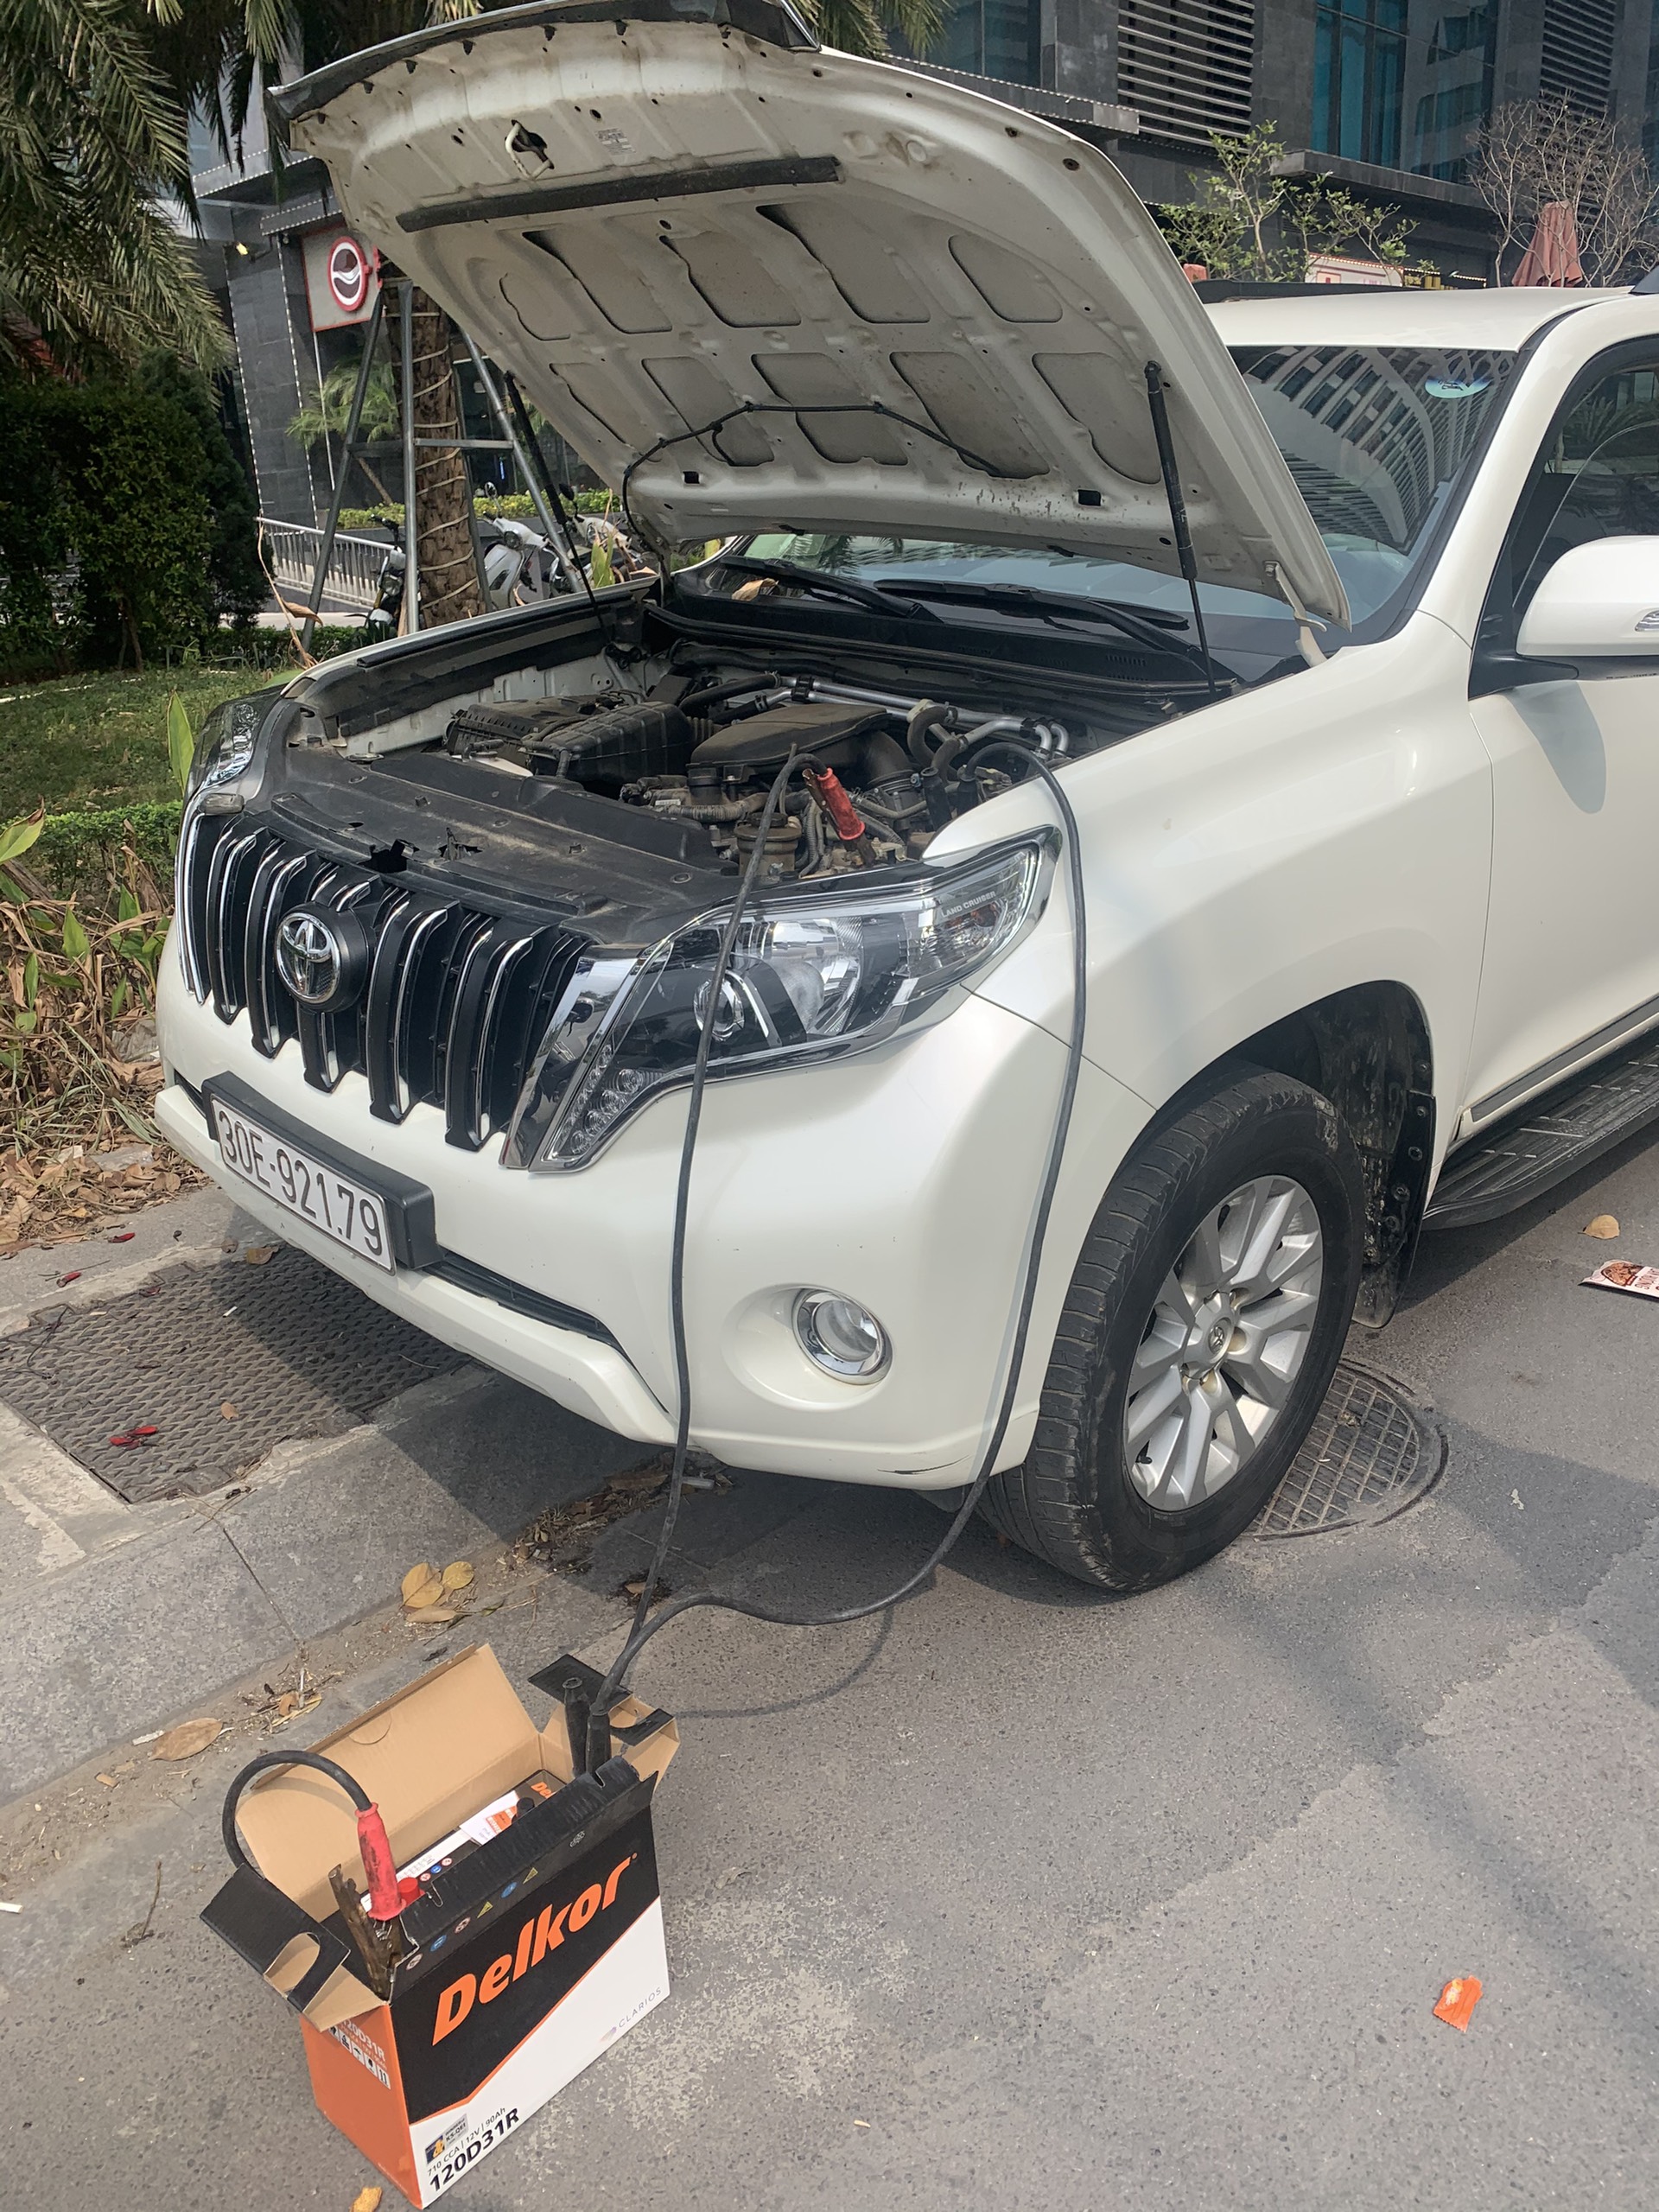 Cứu hộ câu Kích sạc thay bình ắc quy ô tô tại Huyện Bình Chánh TP HCM